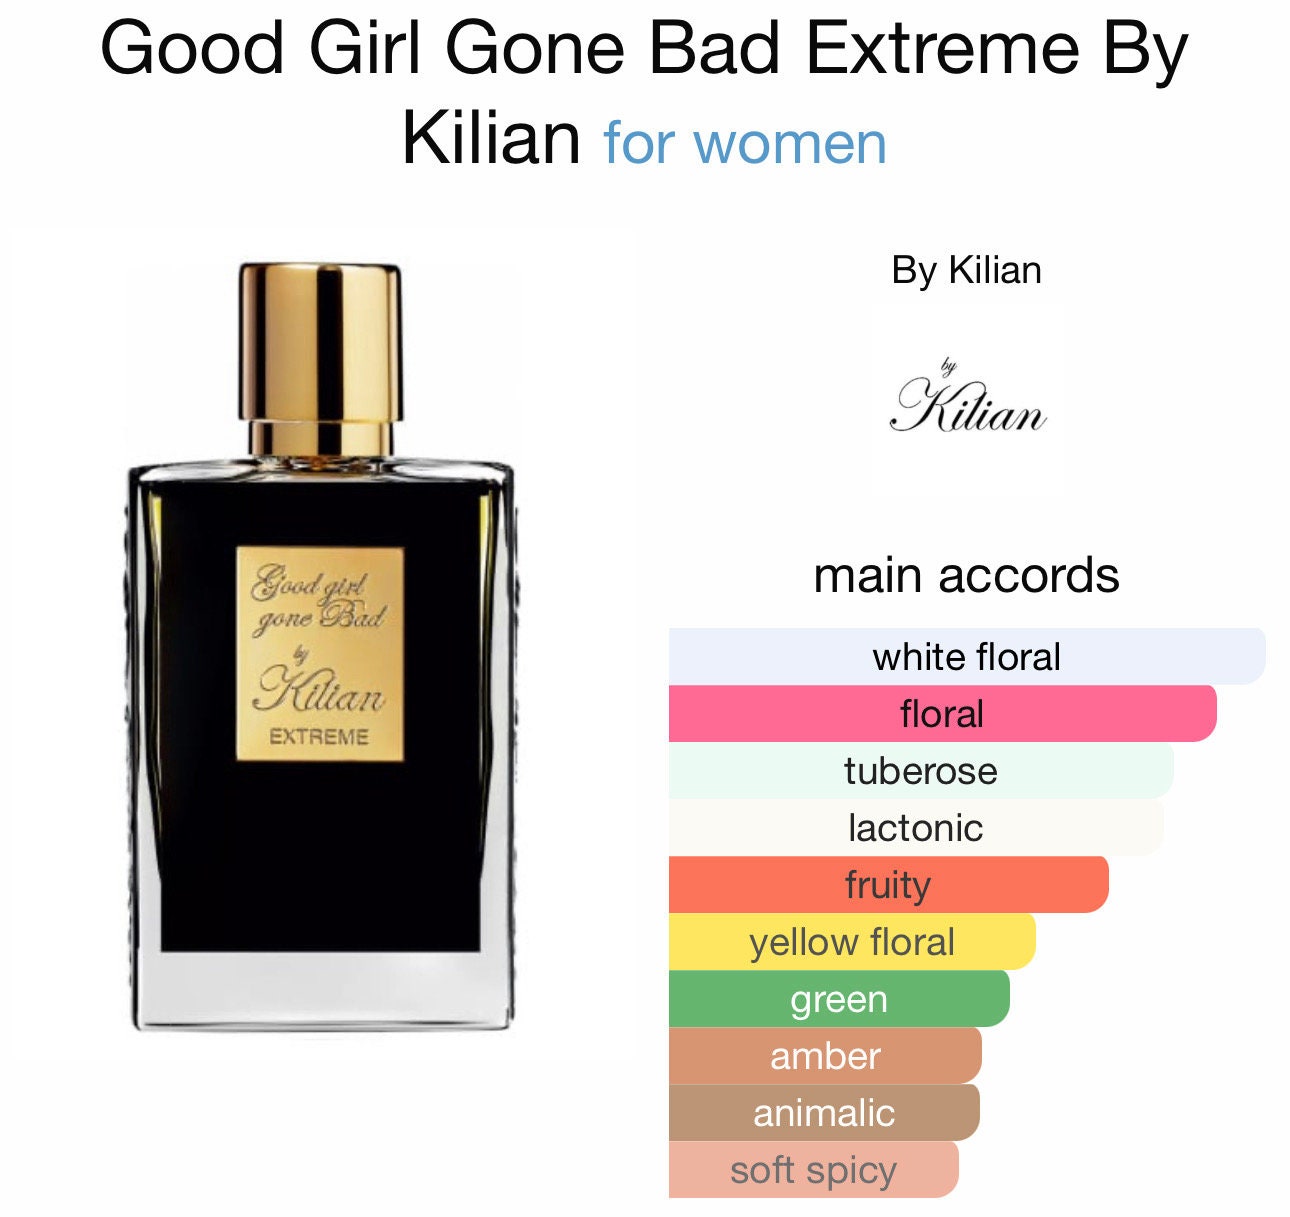 Good girl gone Bad by Kilian - Extreme, Kilian